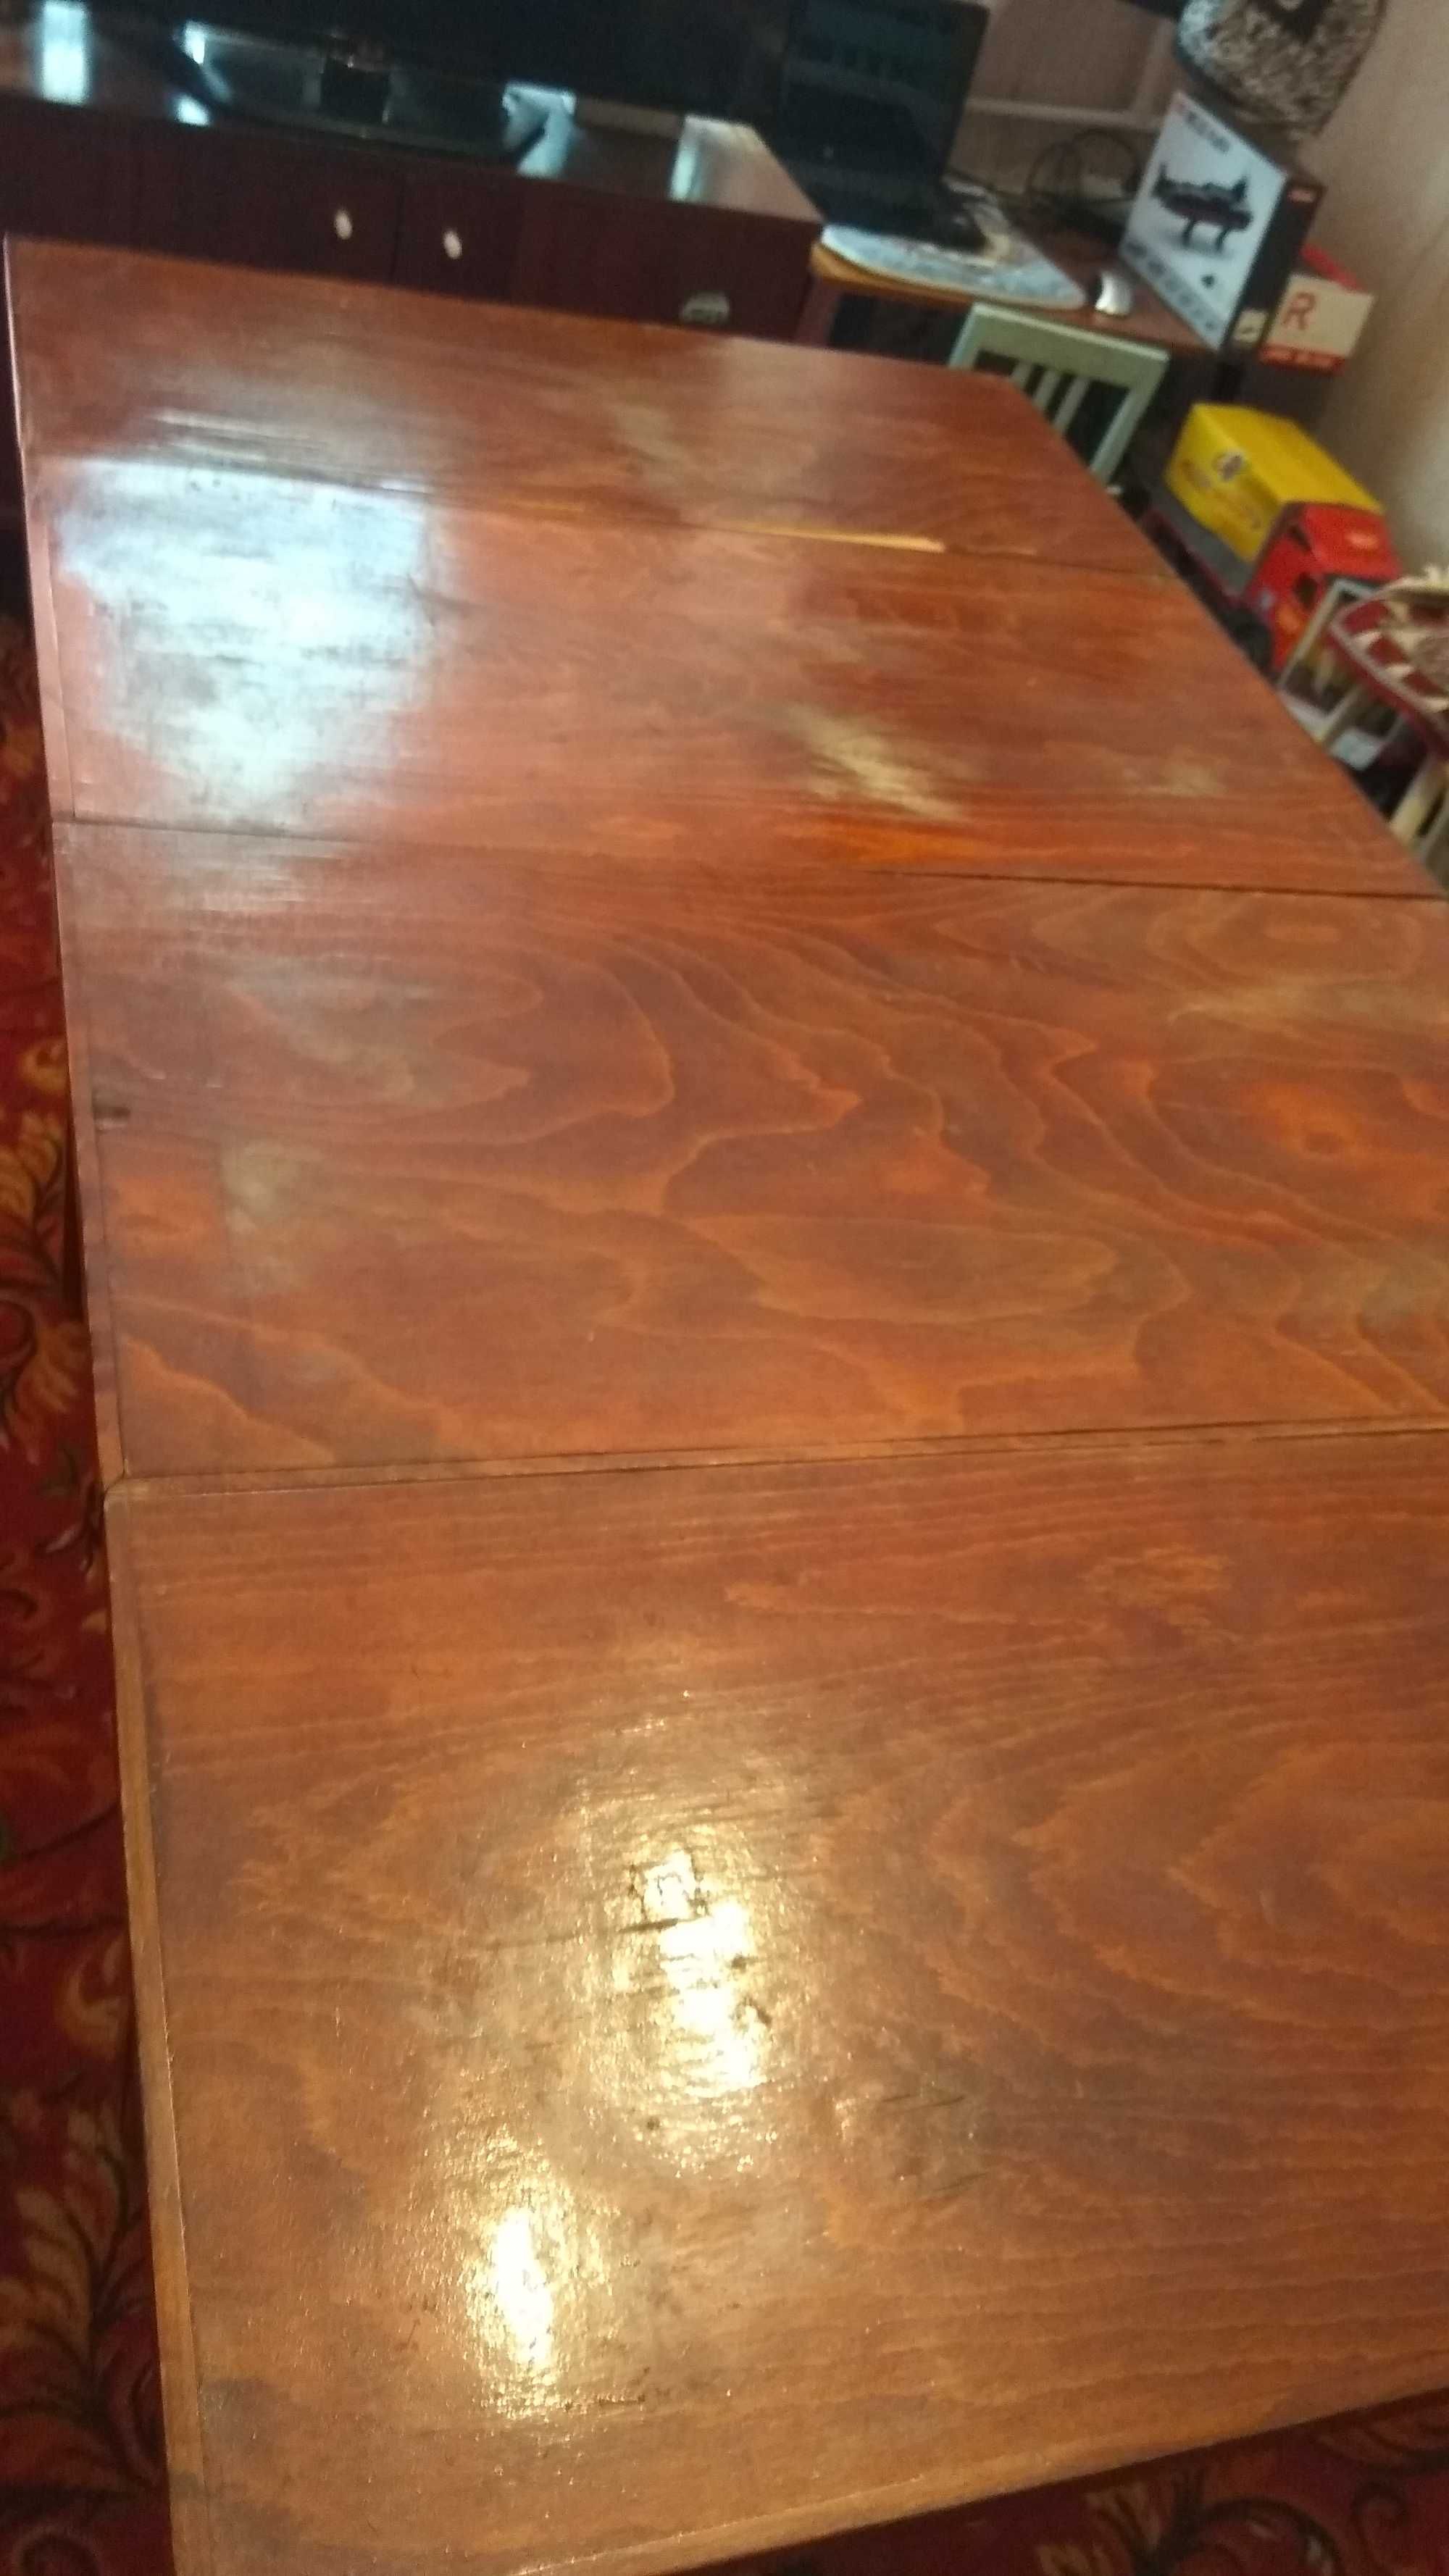 Раздвижной деревянный стол